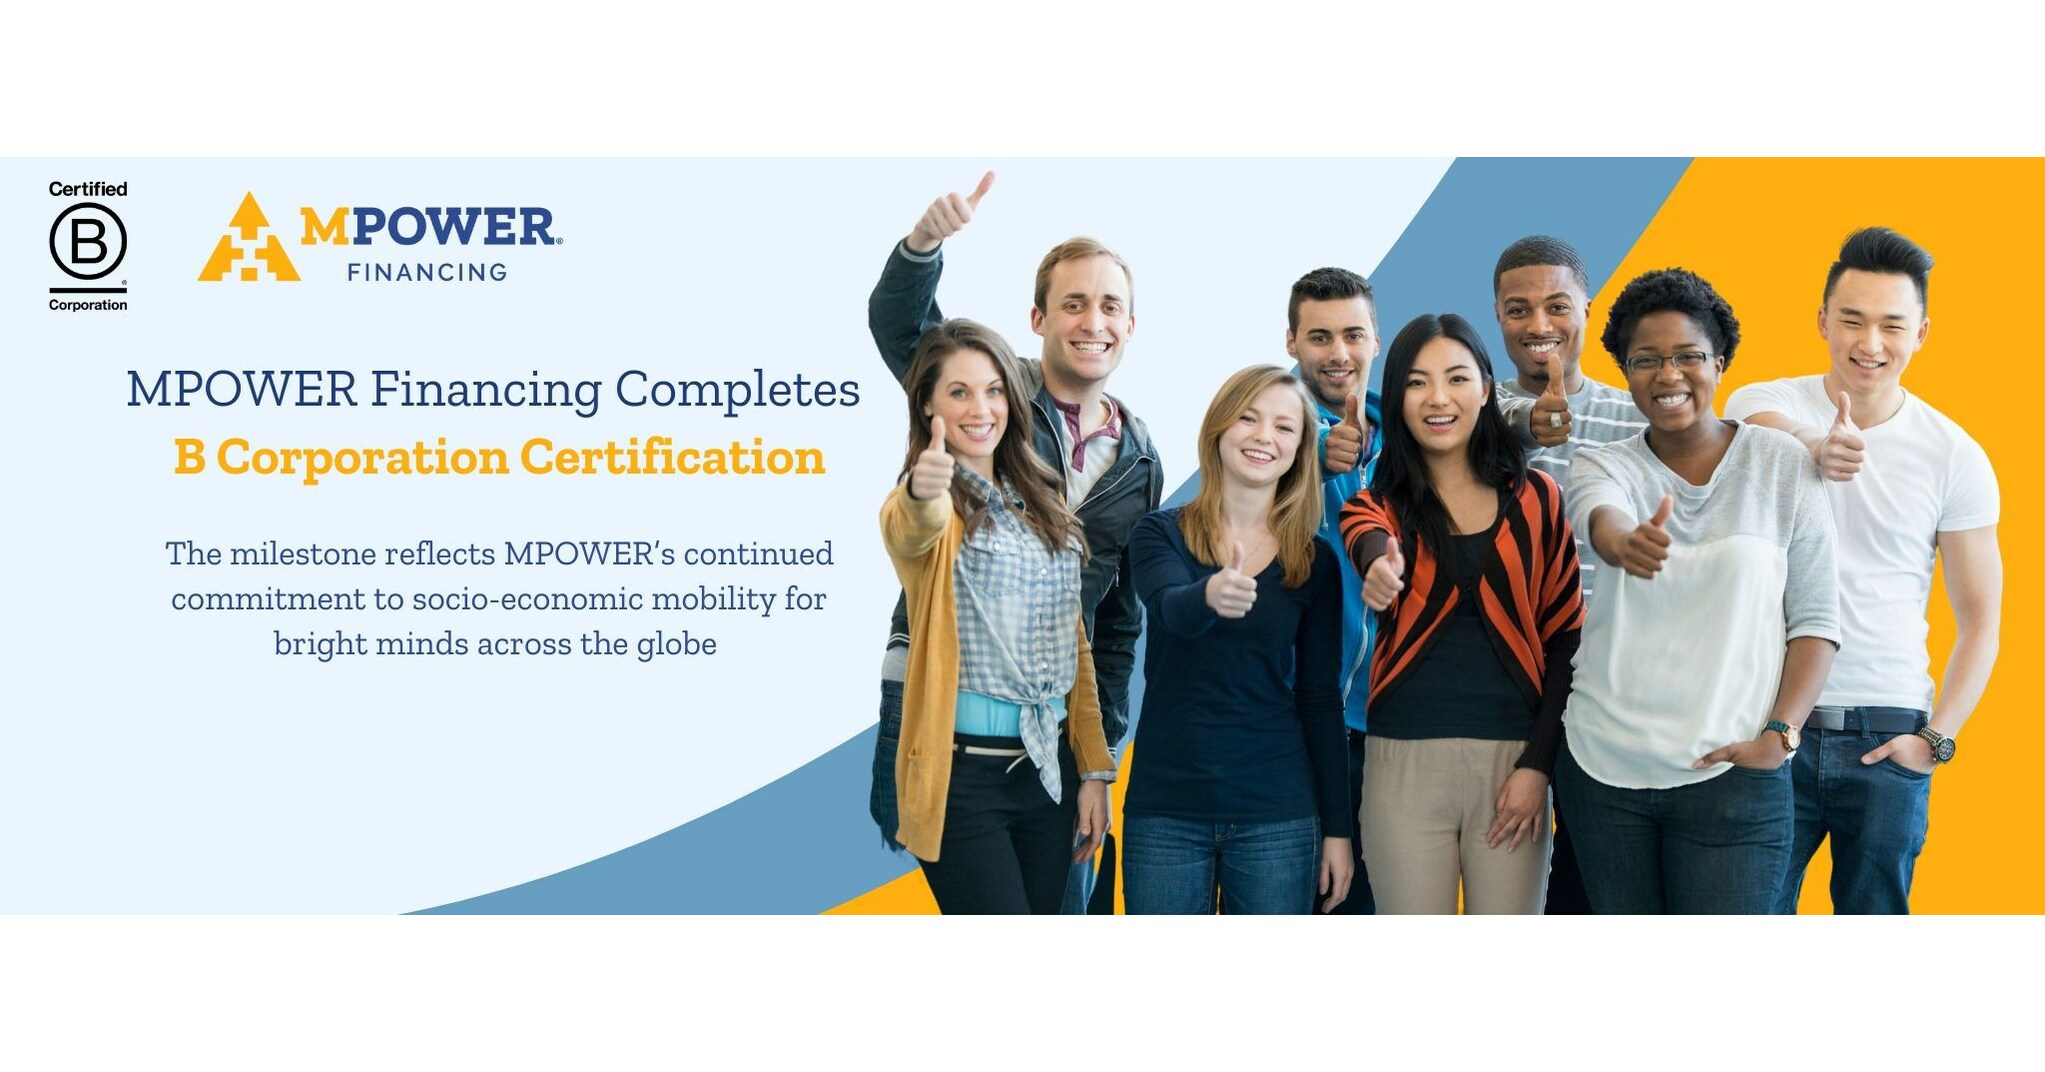 Financiamiento MPOWER Certificación B Corporation™ completada